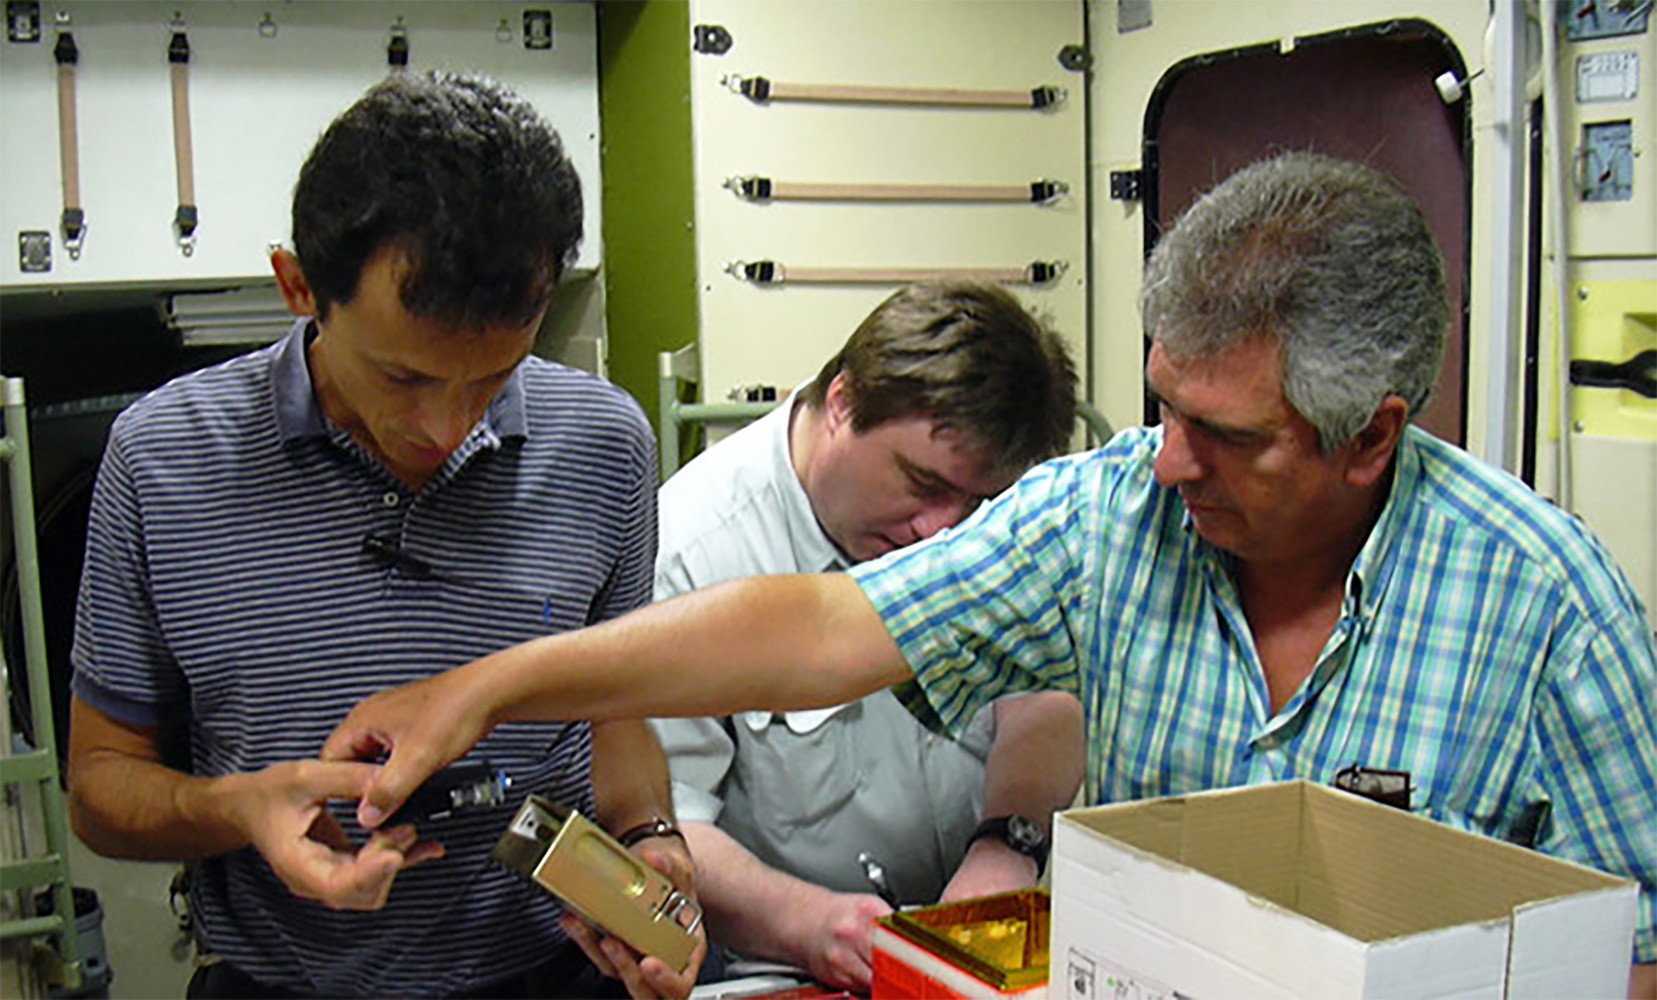 Pedro Duque y F. Javier Medina realizando pruebas de funcionamiento del dispositivo de germinación y cultivo de plántulas en la Star City de Moscú en 2003.